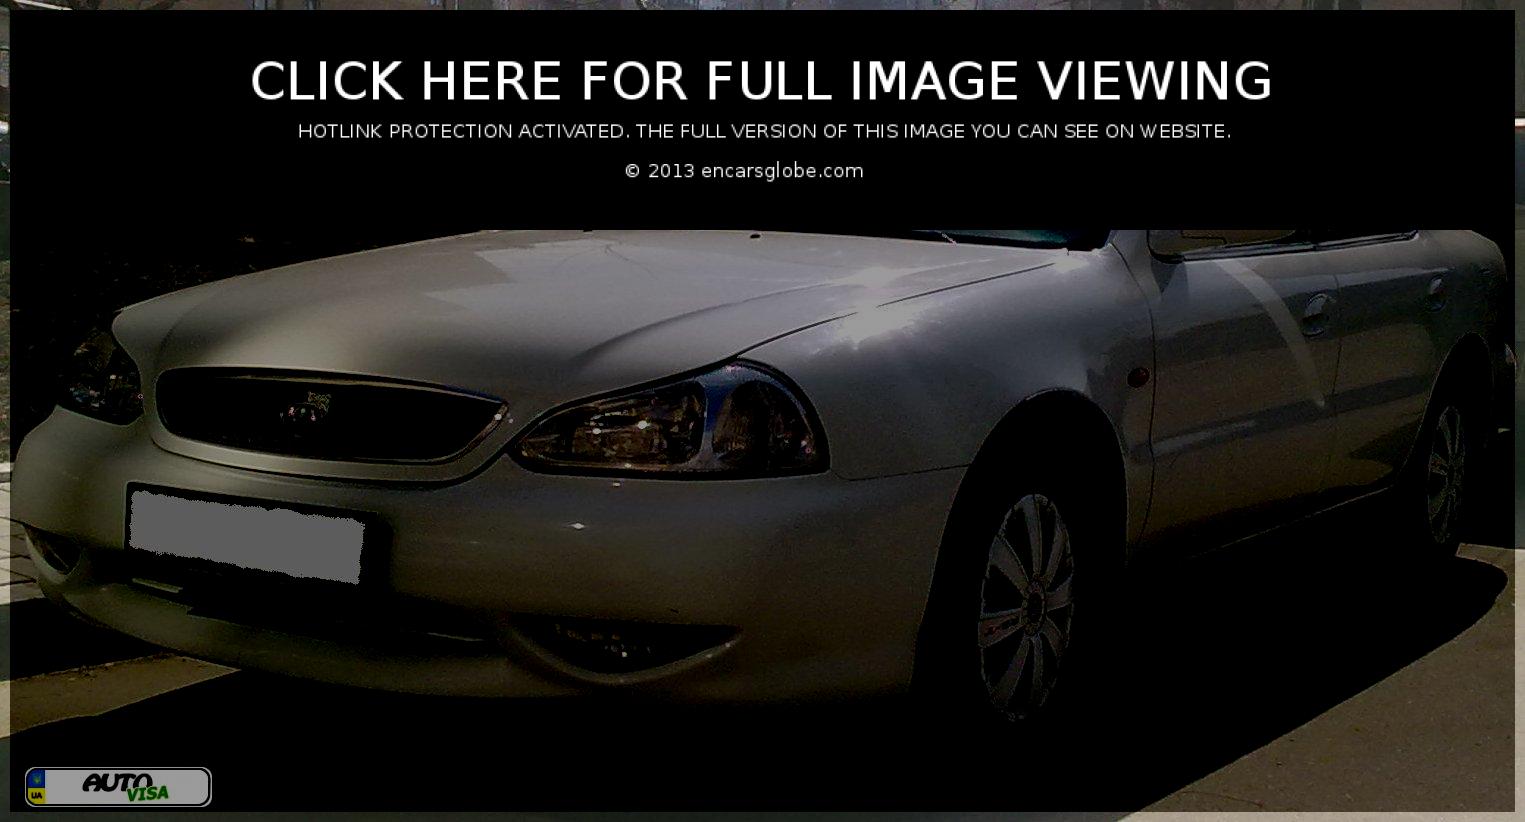 Gallery of all models of Kia: Kia Avella 15 GLi, Kia Pride Pop 11 ...